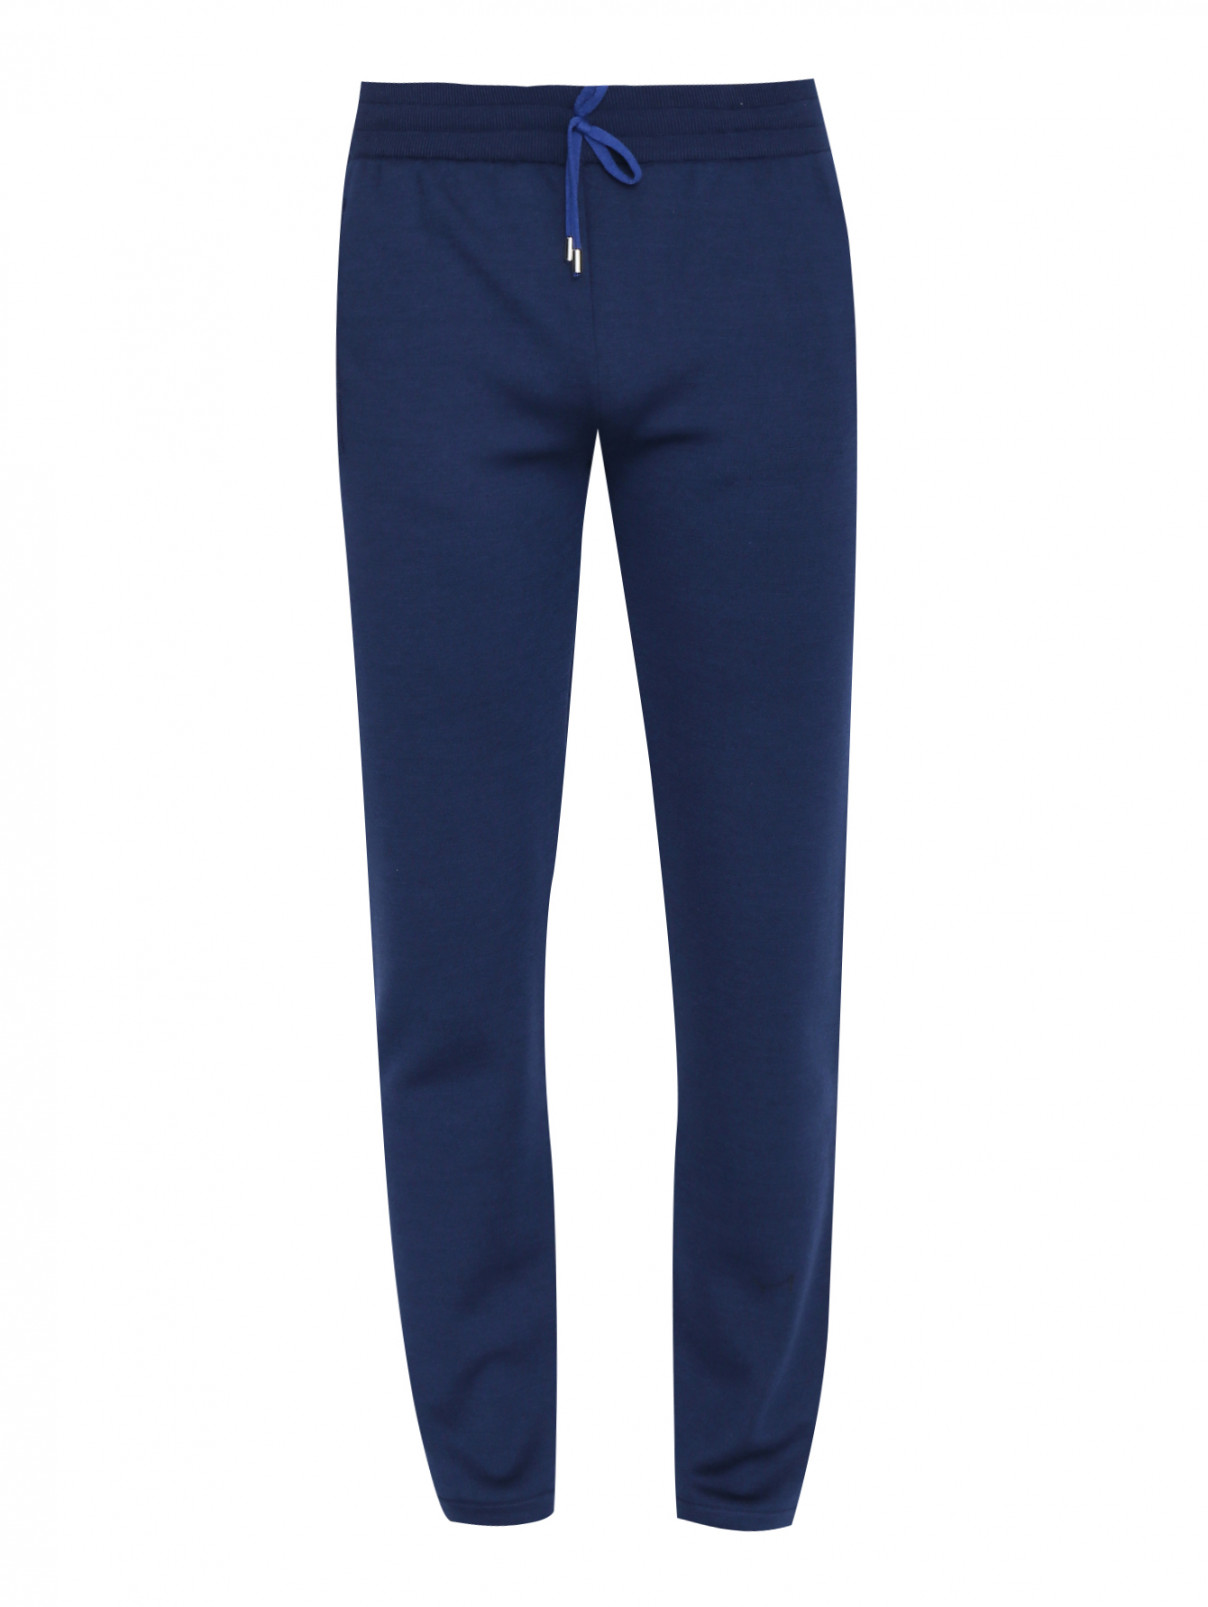 Трикотажные брюки из шерсти и шелка на резинке Pashmere  –  Общий вид  – Цвет:  Синий